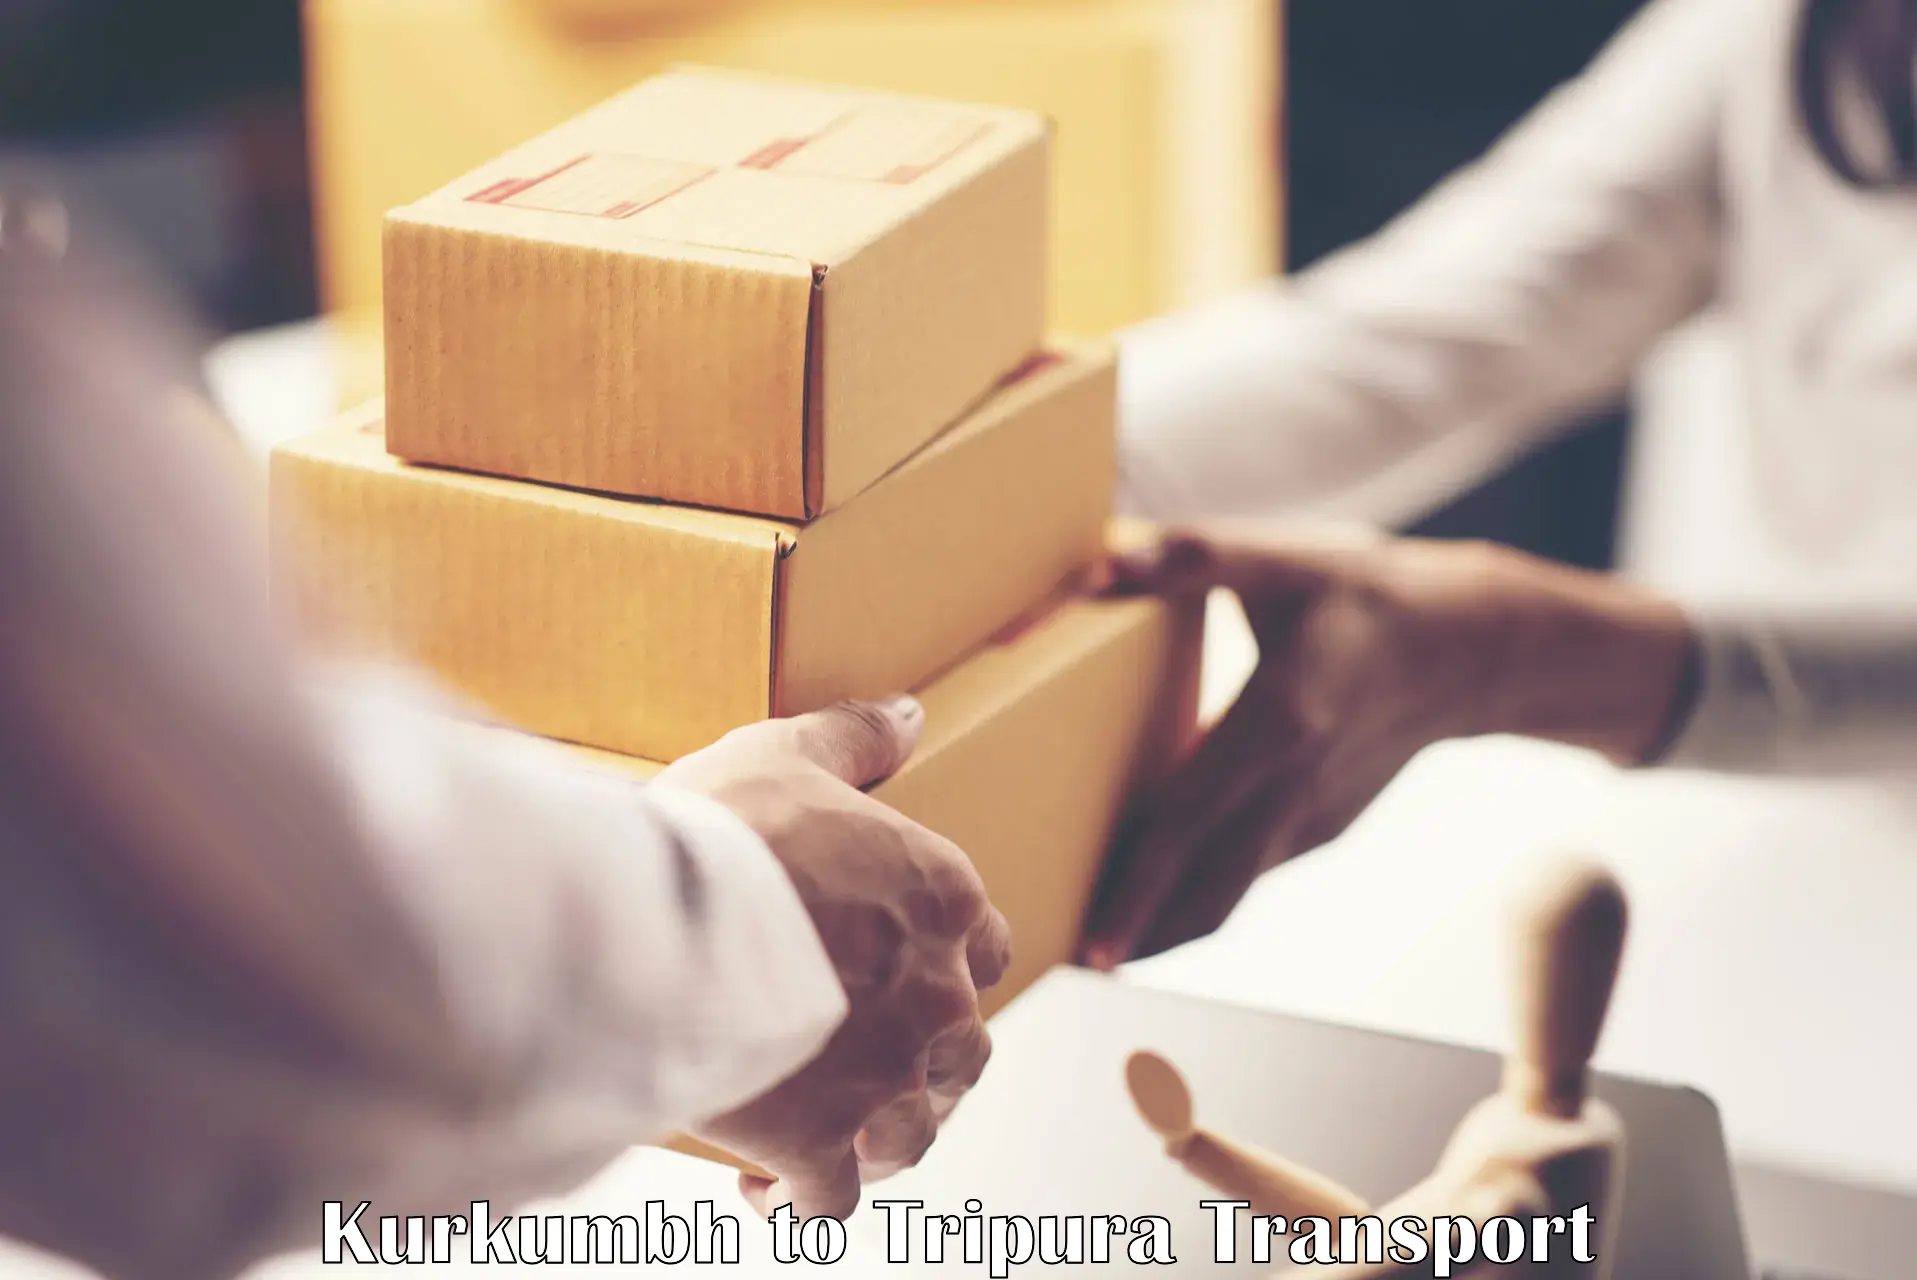 Shipping partner Kurkumbh to Aambasa